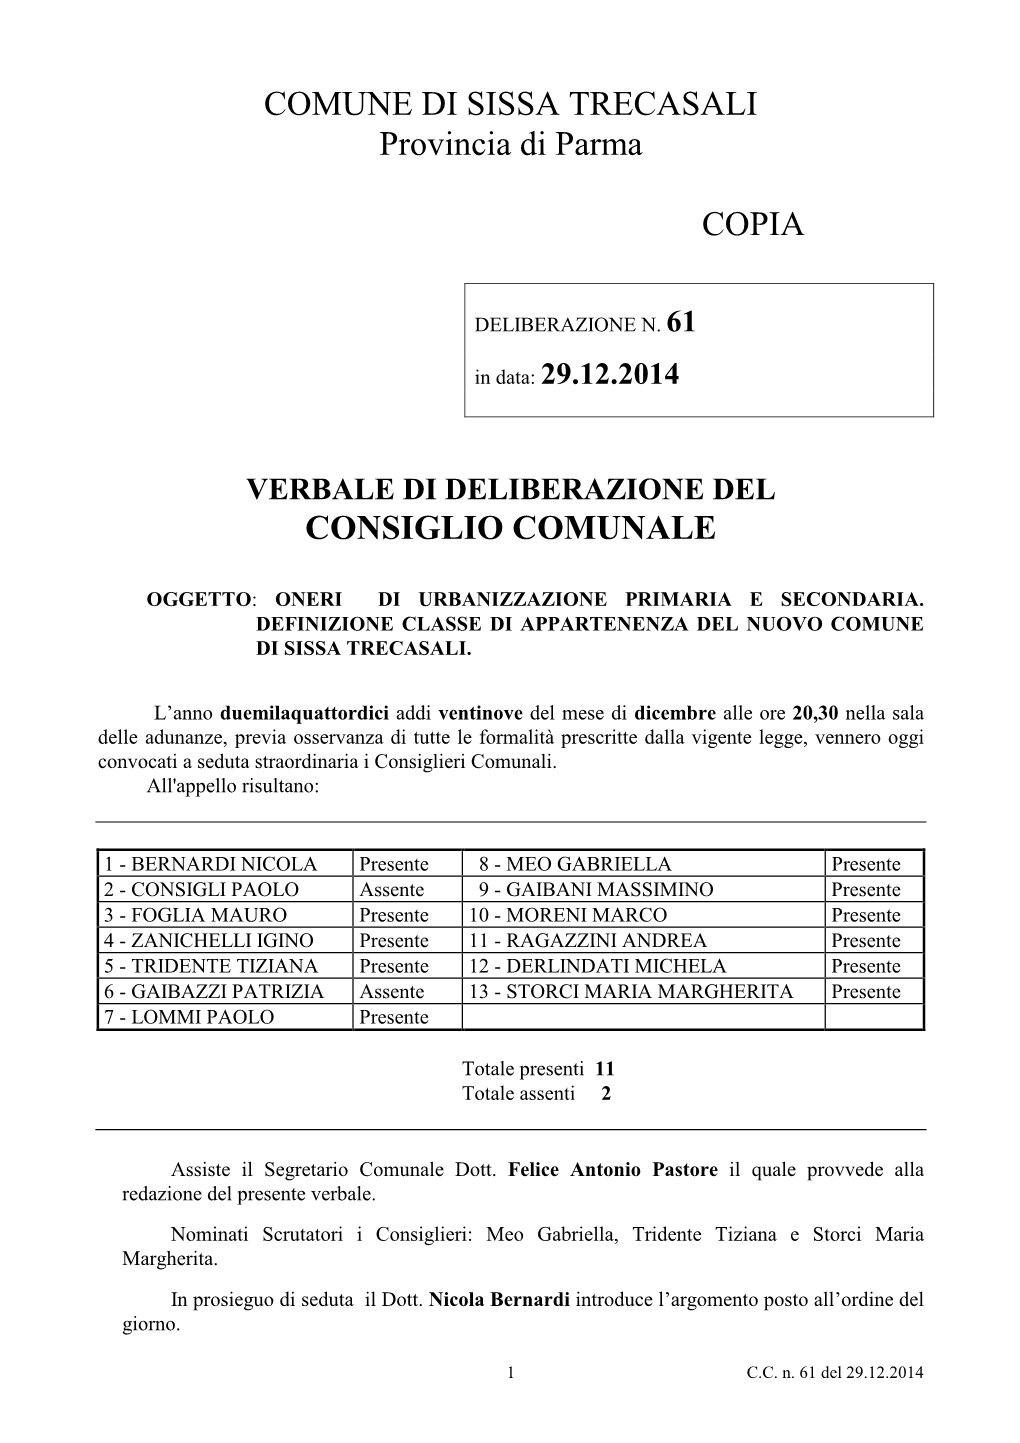 COMUNE DI SISSA TRECASALI Provincia Di Parma COPIA